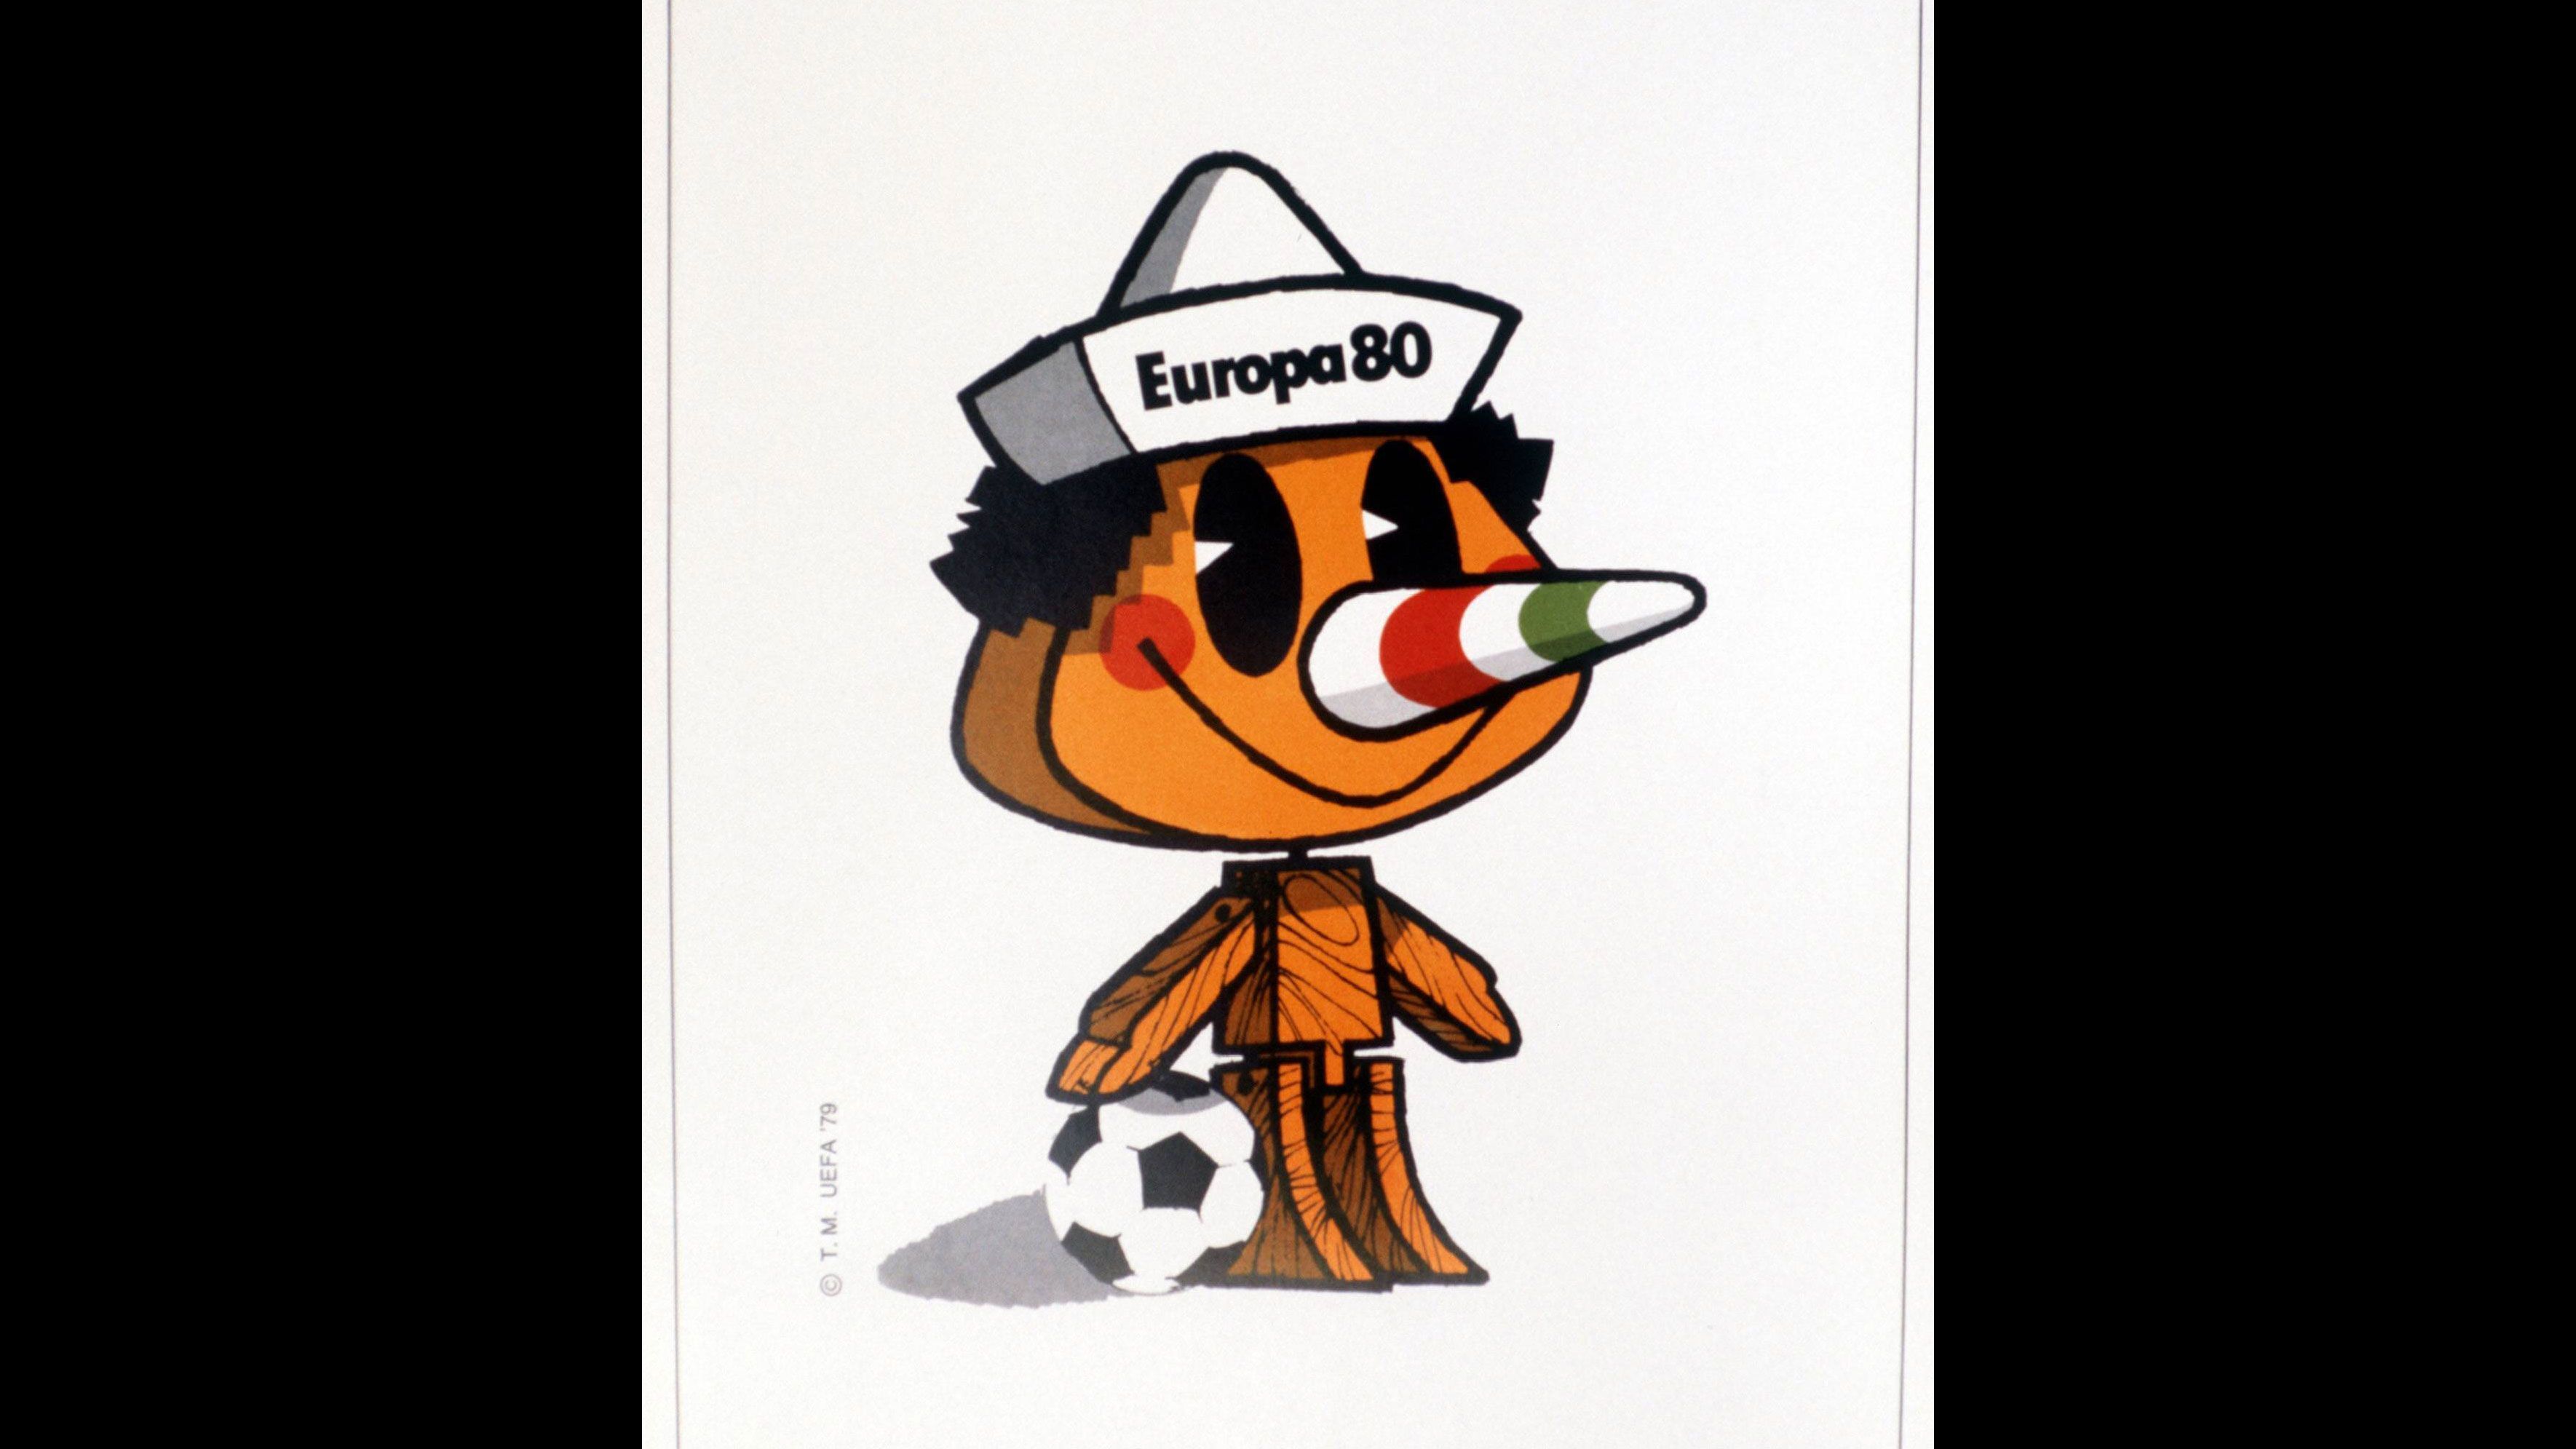 
                <strong>Italien 1980: Pinocchio</strong><br>
                Das erste Maskottchen bei der EM 1980 in Italien hieß Pinocchio. Viel gibt es dazu auch gar nicht zu erklären, da es genau das verkörpern sollte: Die weltberühmte Holzpuppe mit langer Nase in den italienischen Landesfarben. Noch ein Hut mit der Aufschrift "Europa 80" auf den Kopf, dazu ein Fußball und fertig war das erste Maskottchen der EM-Geschichte. 
              